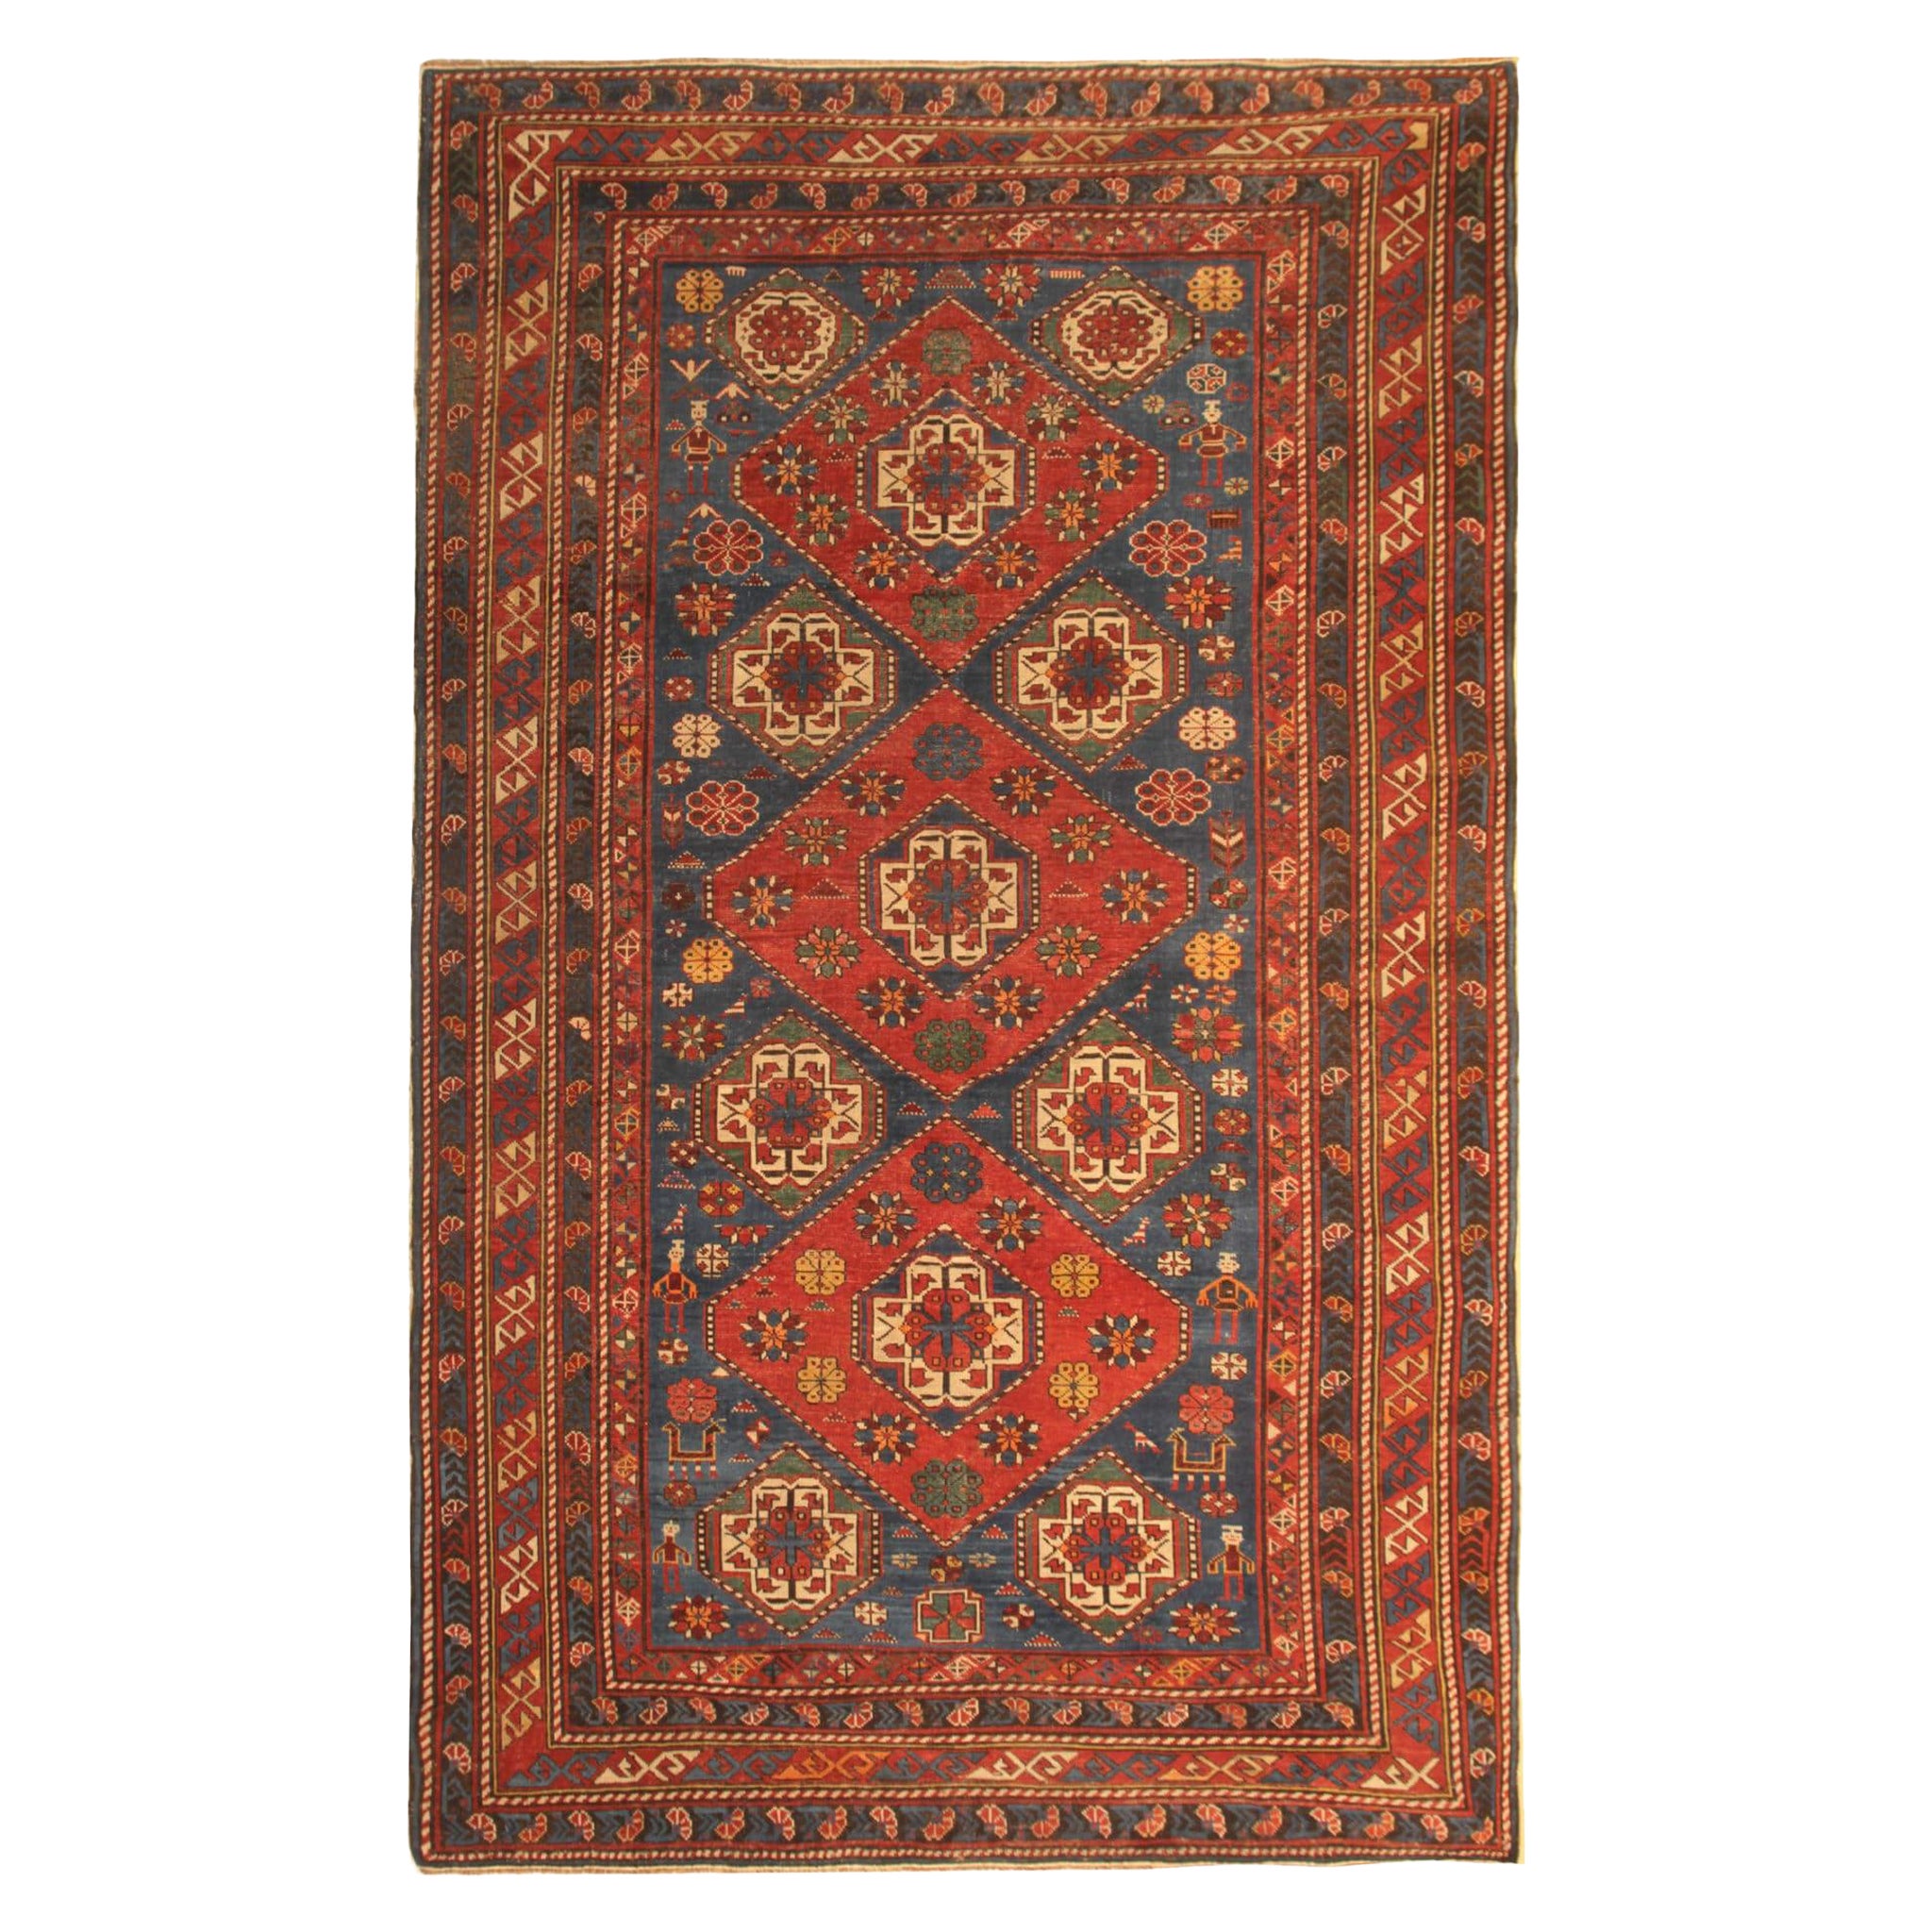 Seltener antiker kaukasischer orientalischer Teppich, handgefertigter Teppich aus der Shirvan-Region